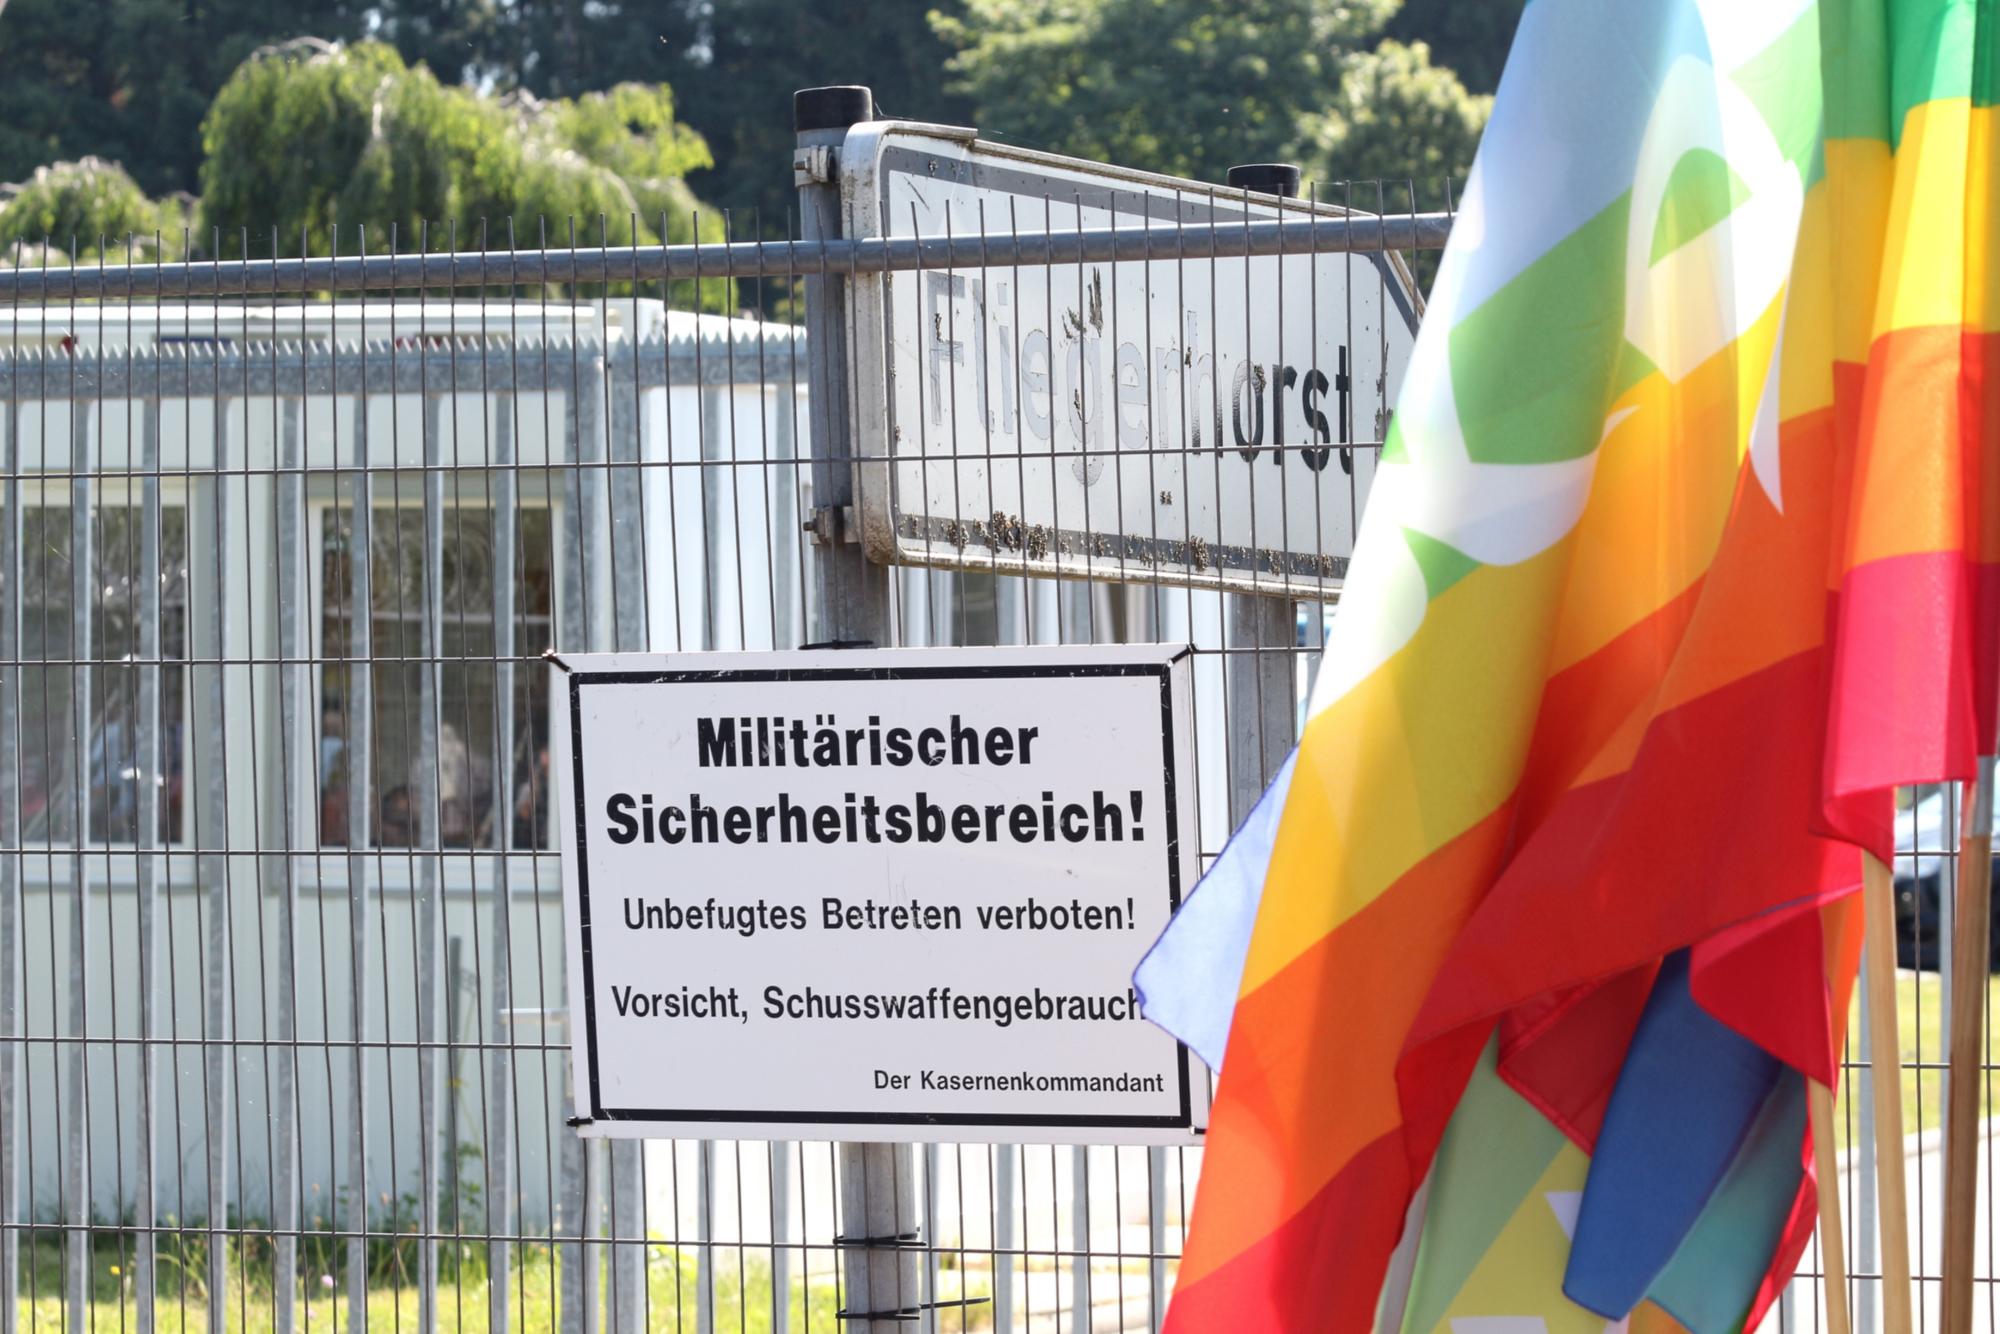 Büchel, 3. Juli 2021: Bei der Frage nach Atomwaffen dürfe sich die Kirche nicht aus der Politik heruiashalten, betonte Bischof Peter Kohlgraf. (c) Bistum Mainz / Blum